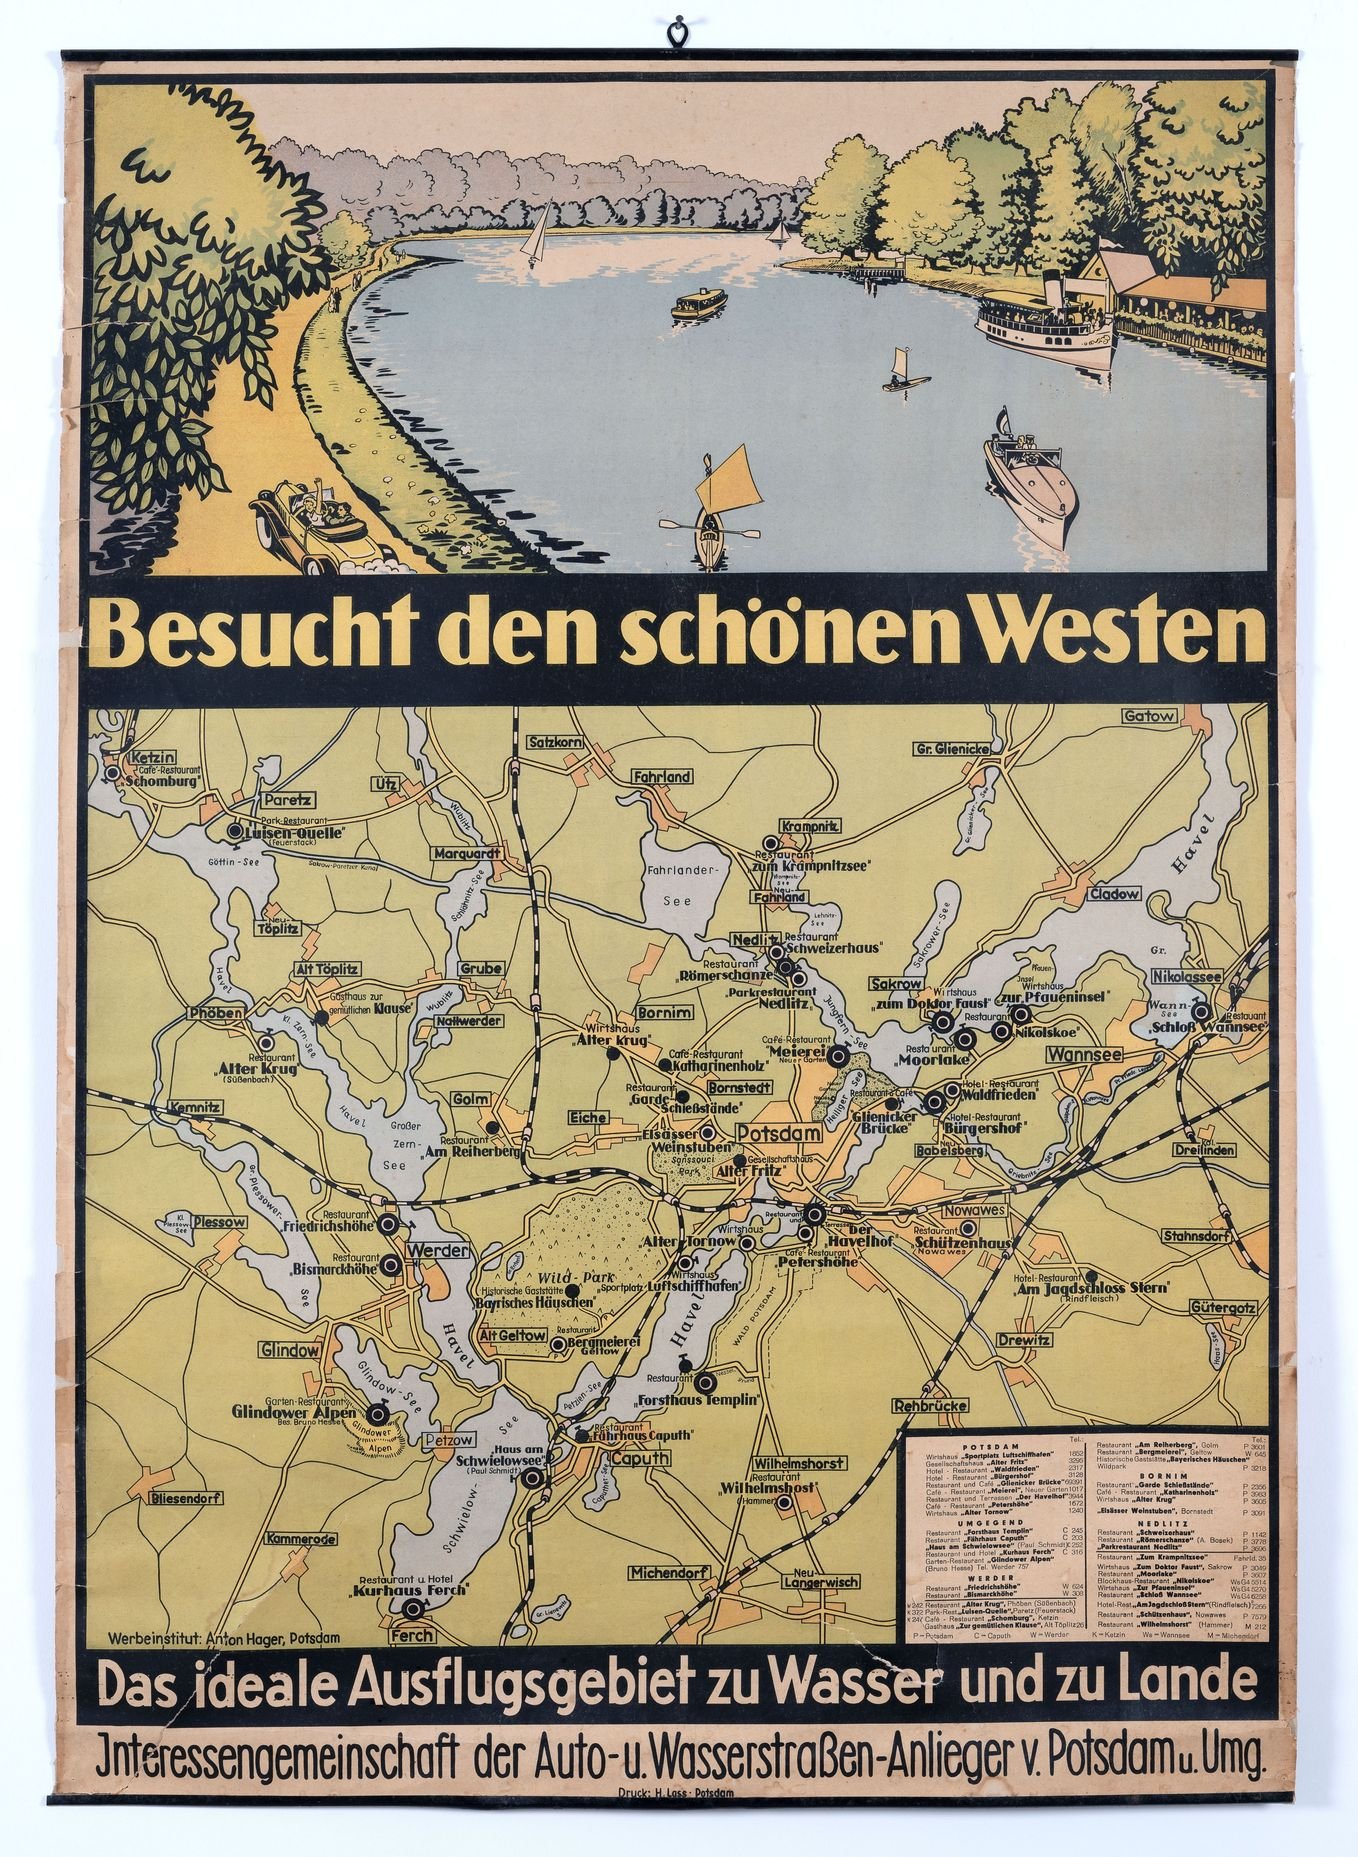 Landkarte und Plakat "Besucht den schönen Westen" (Potsdam Museum - Forum für Kunst und Geschichte CC BY-NC-SA)